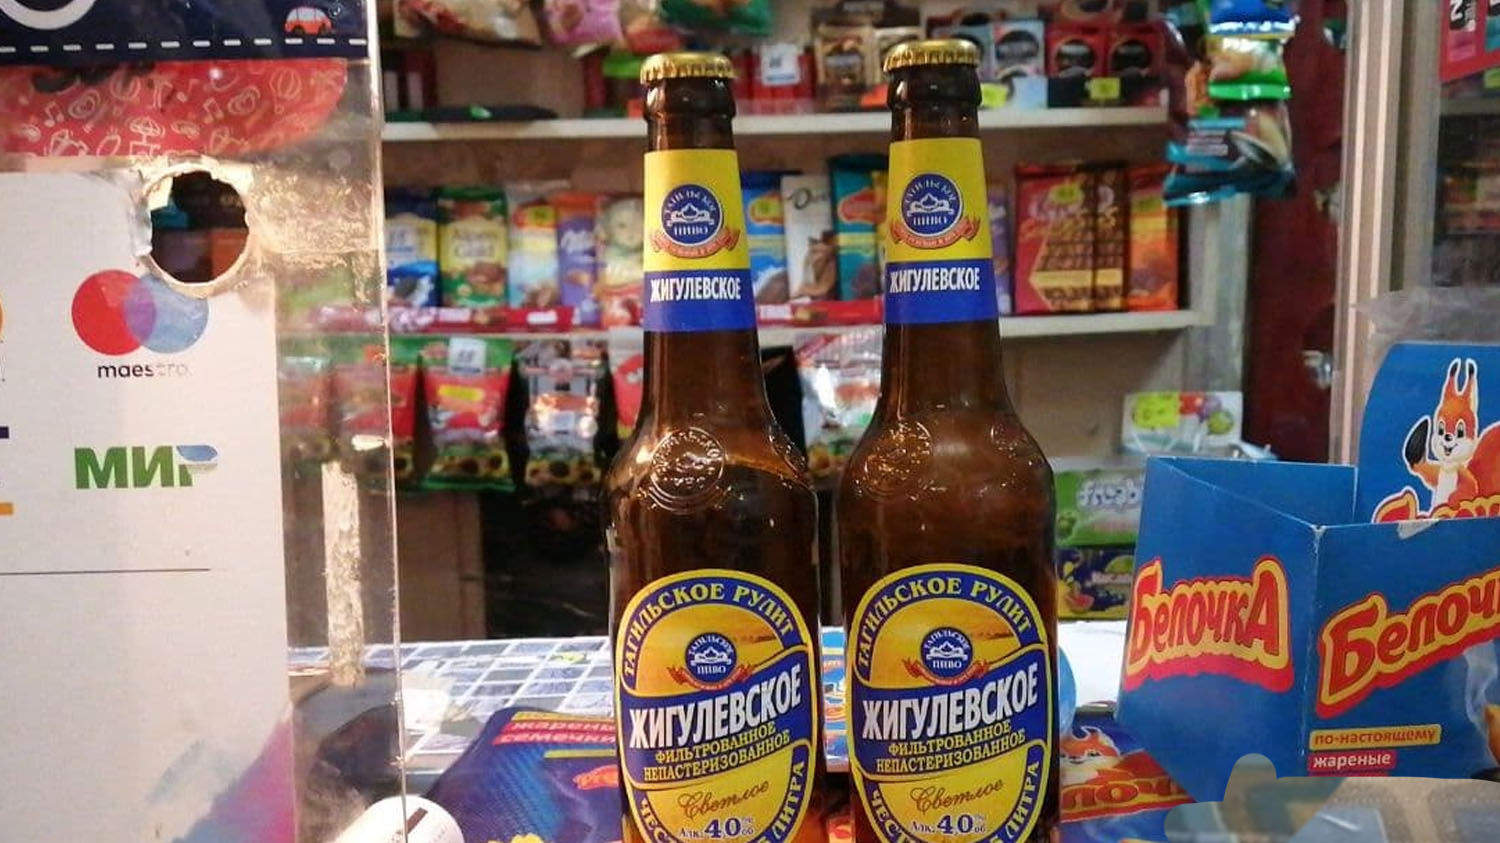 Повторная проверка павильона по выявлению фактов продажи пива в ночное время в микрорайоне Эльмаш